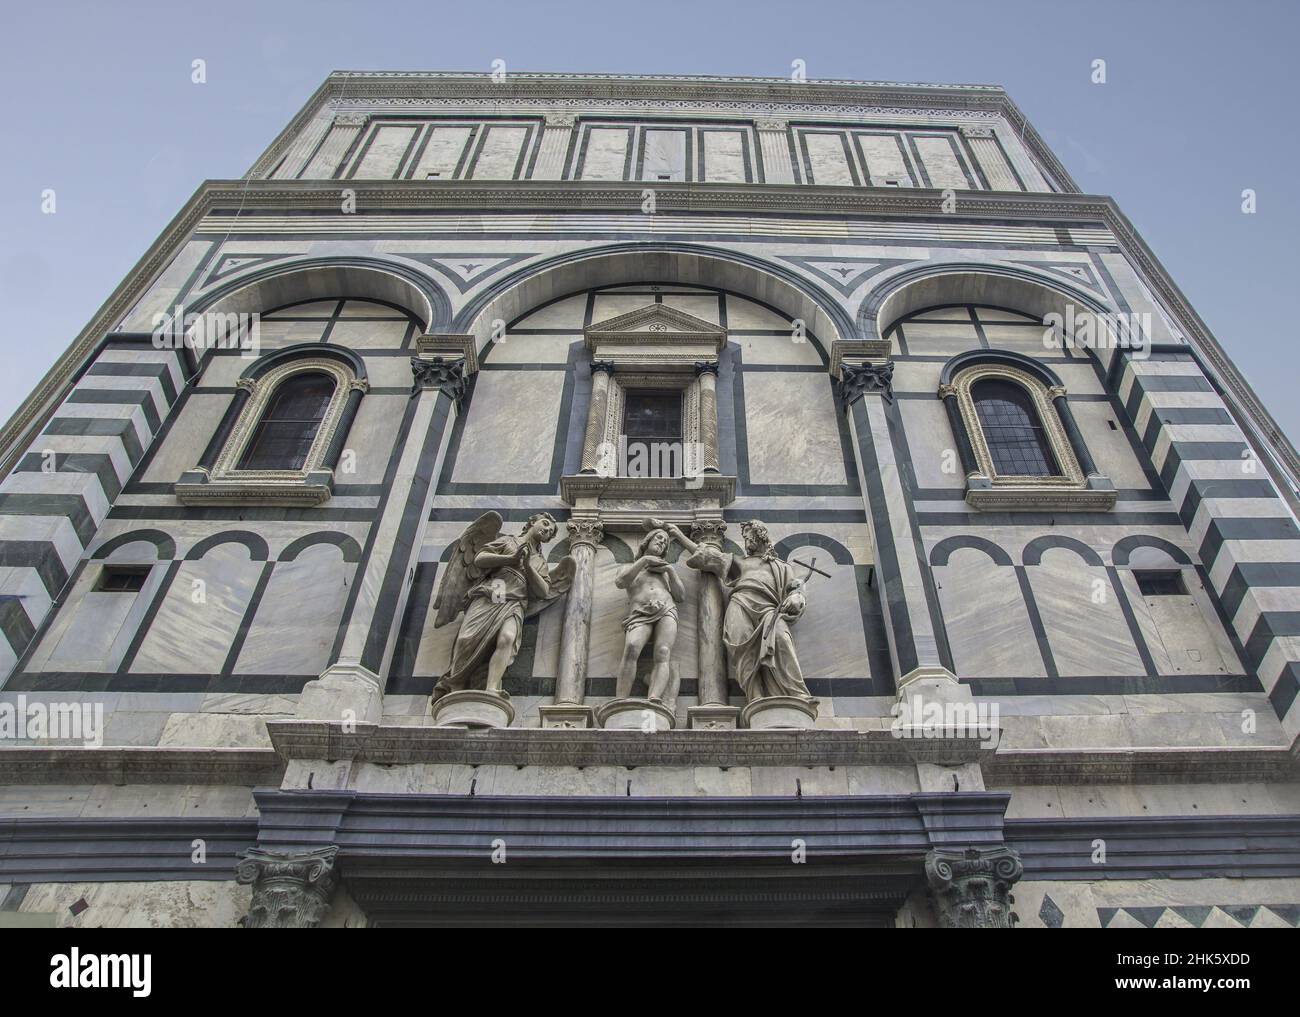 Jesus baptism scene, statues on the facade of Santa Maria del Fiore. Stock Photo